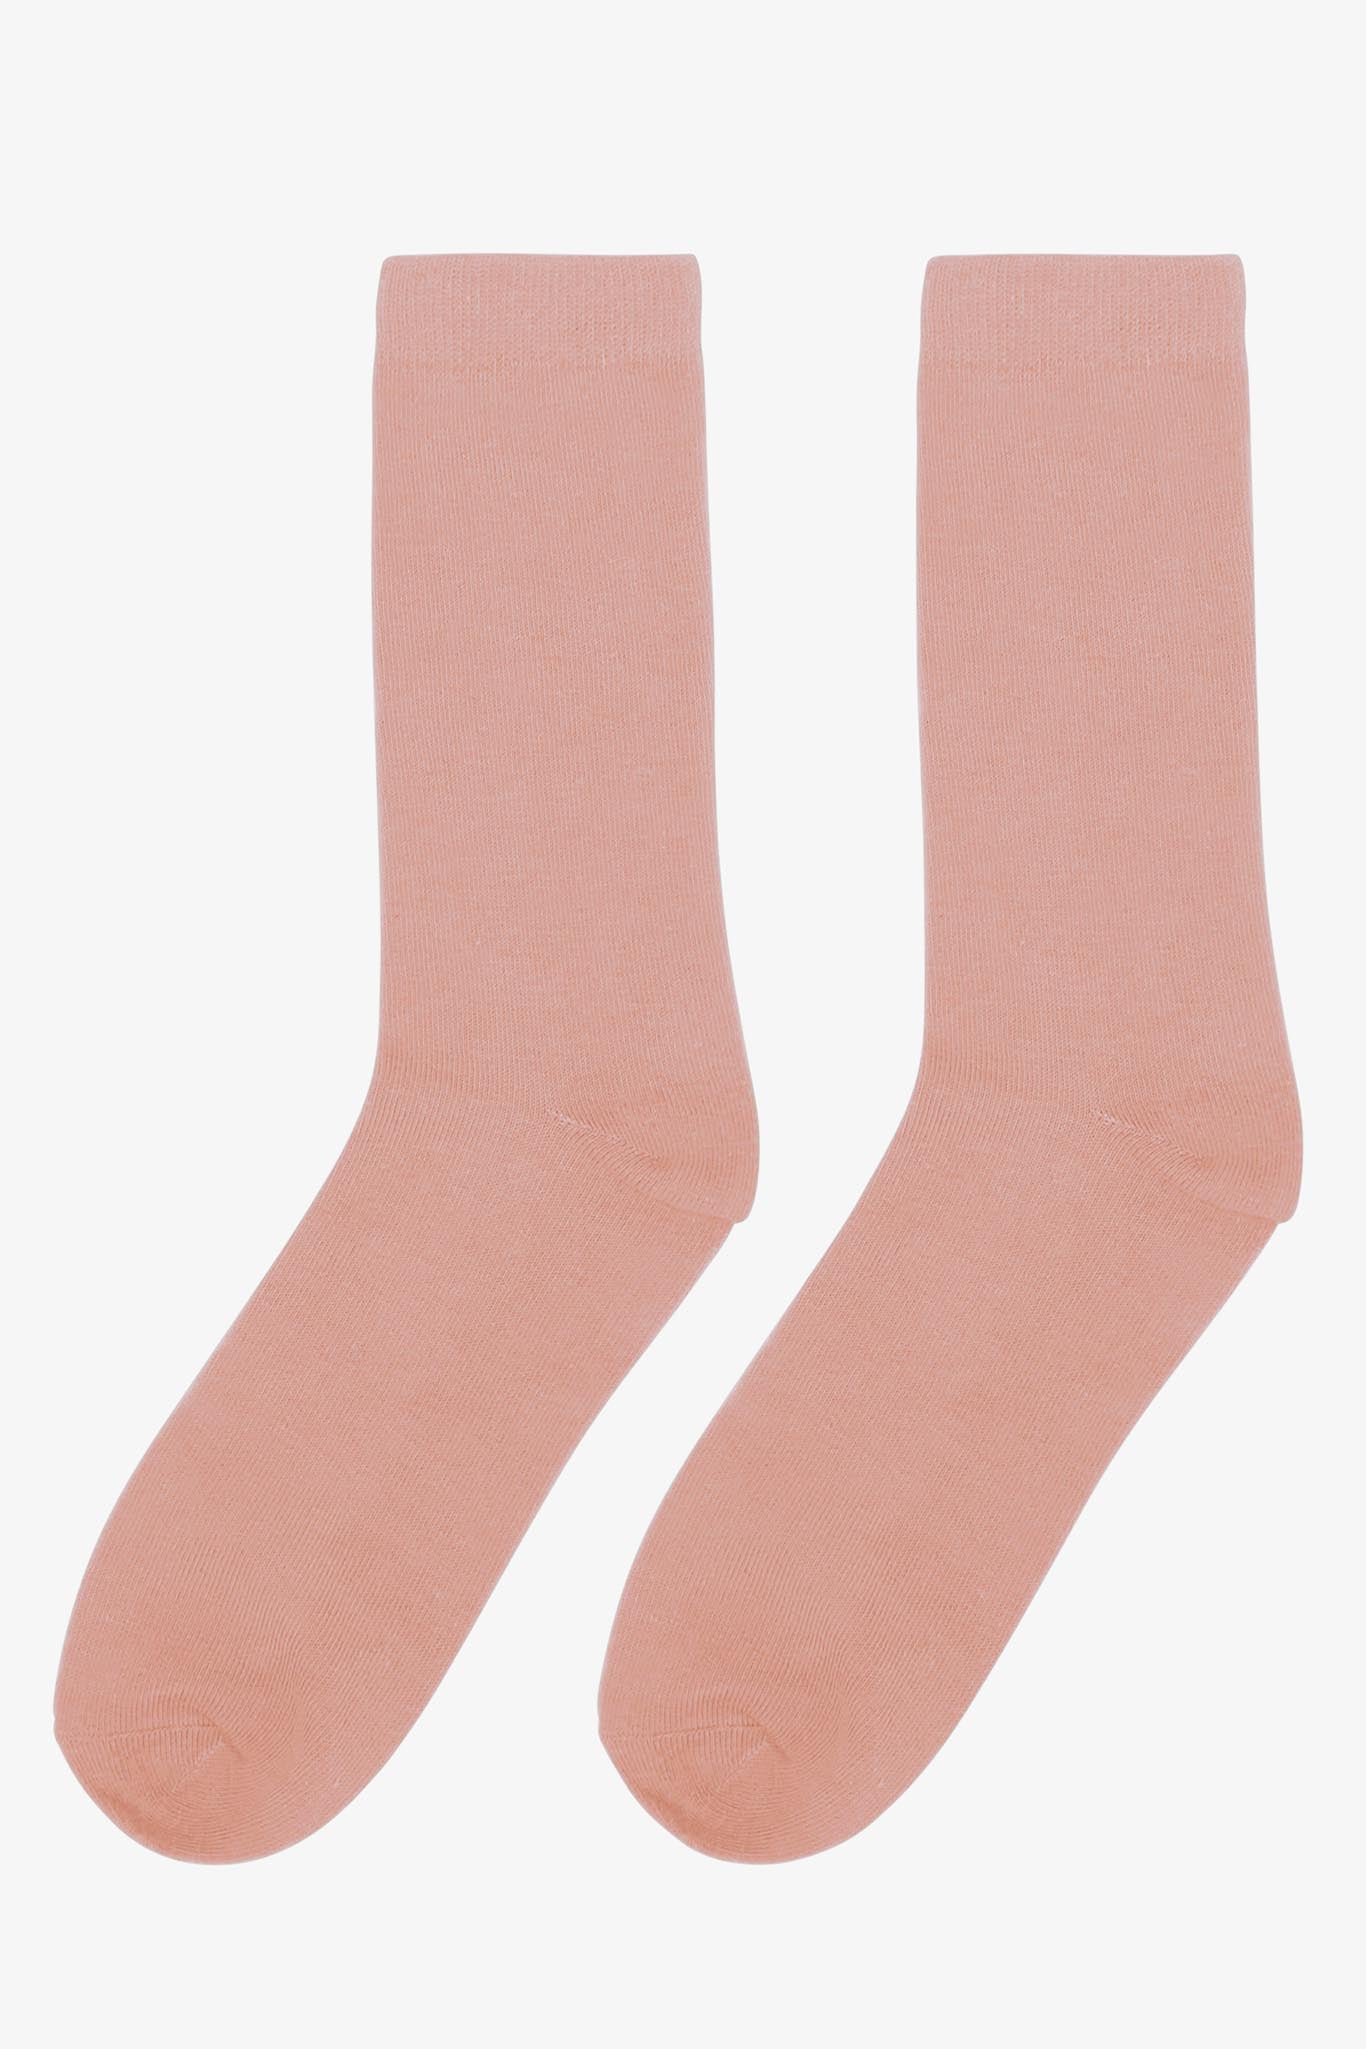 Dusty Rose Groomsmen Socks by Birdy Grey